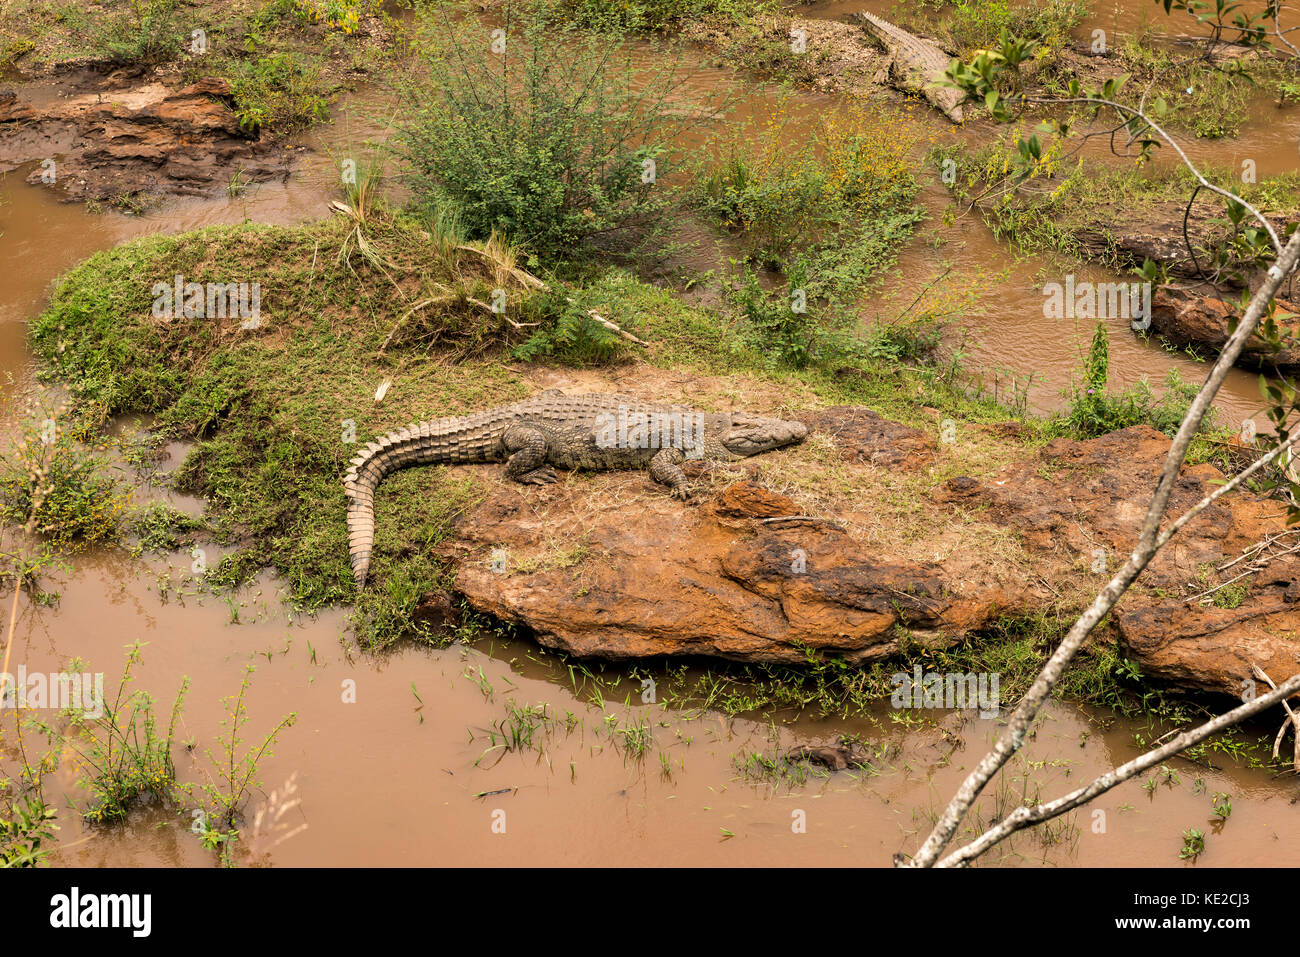 Cocodile africano en las orillas del río Mara Foto de stock